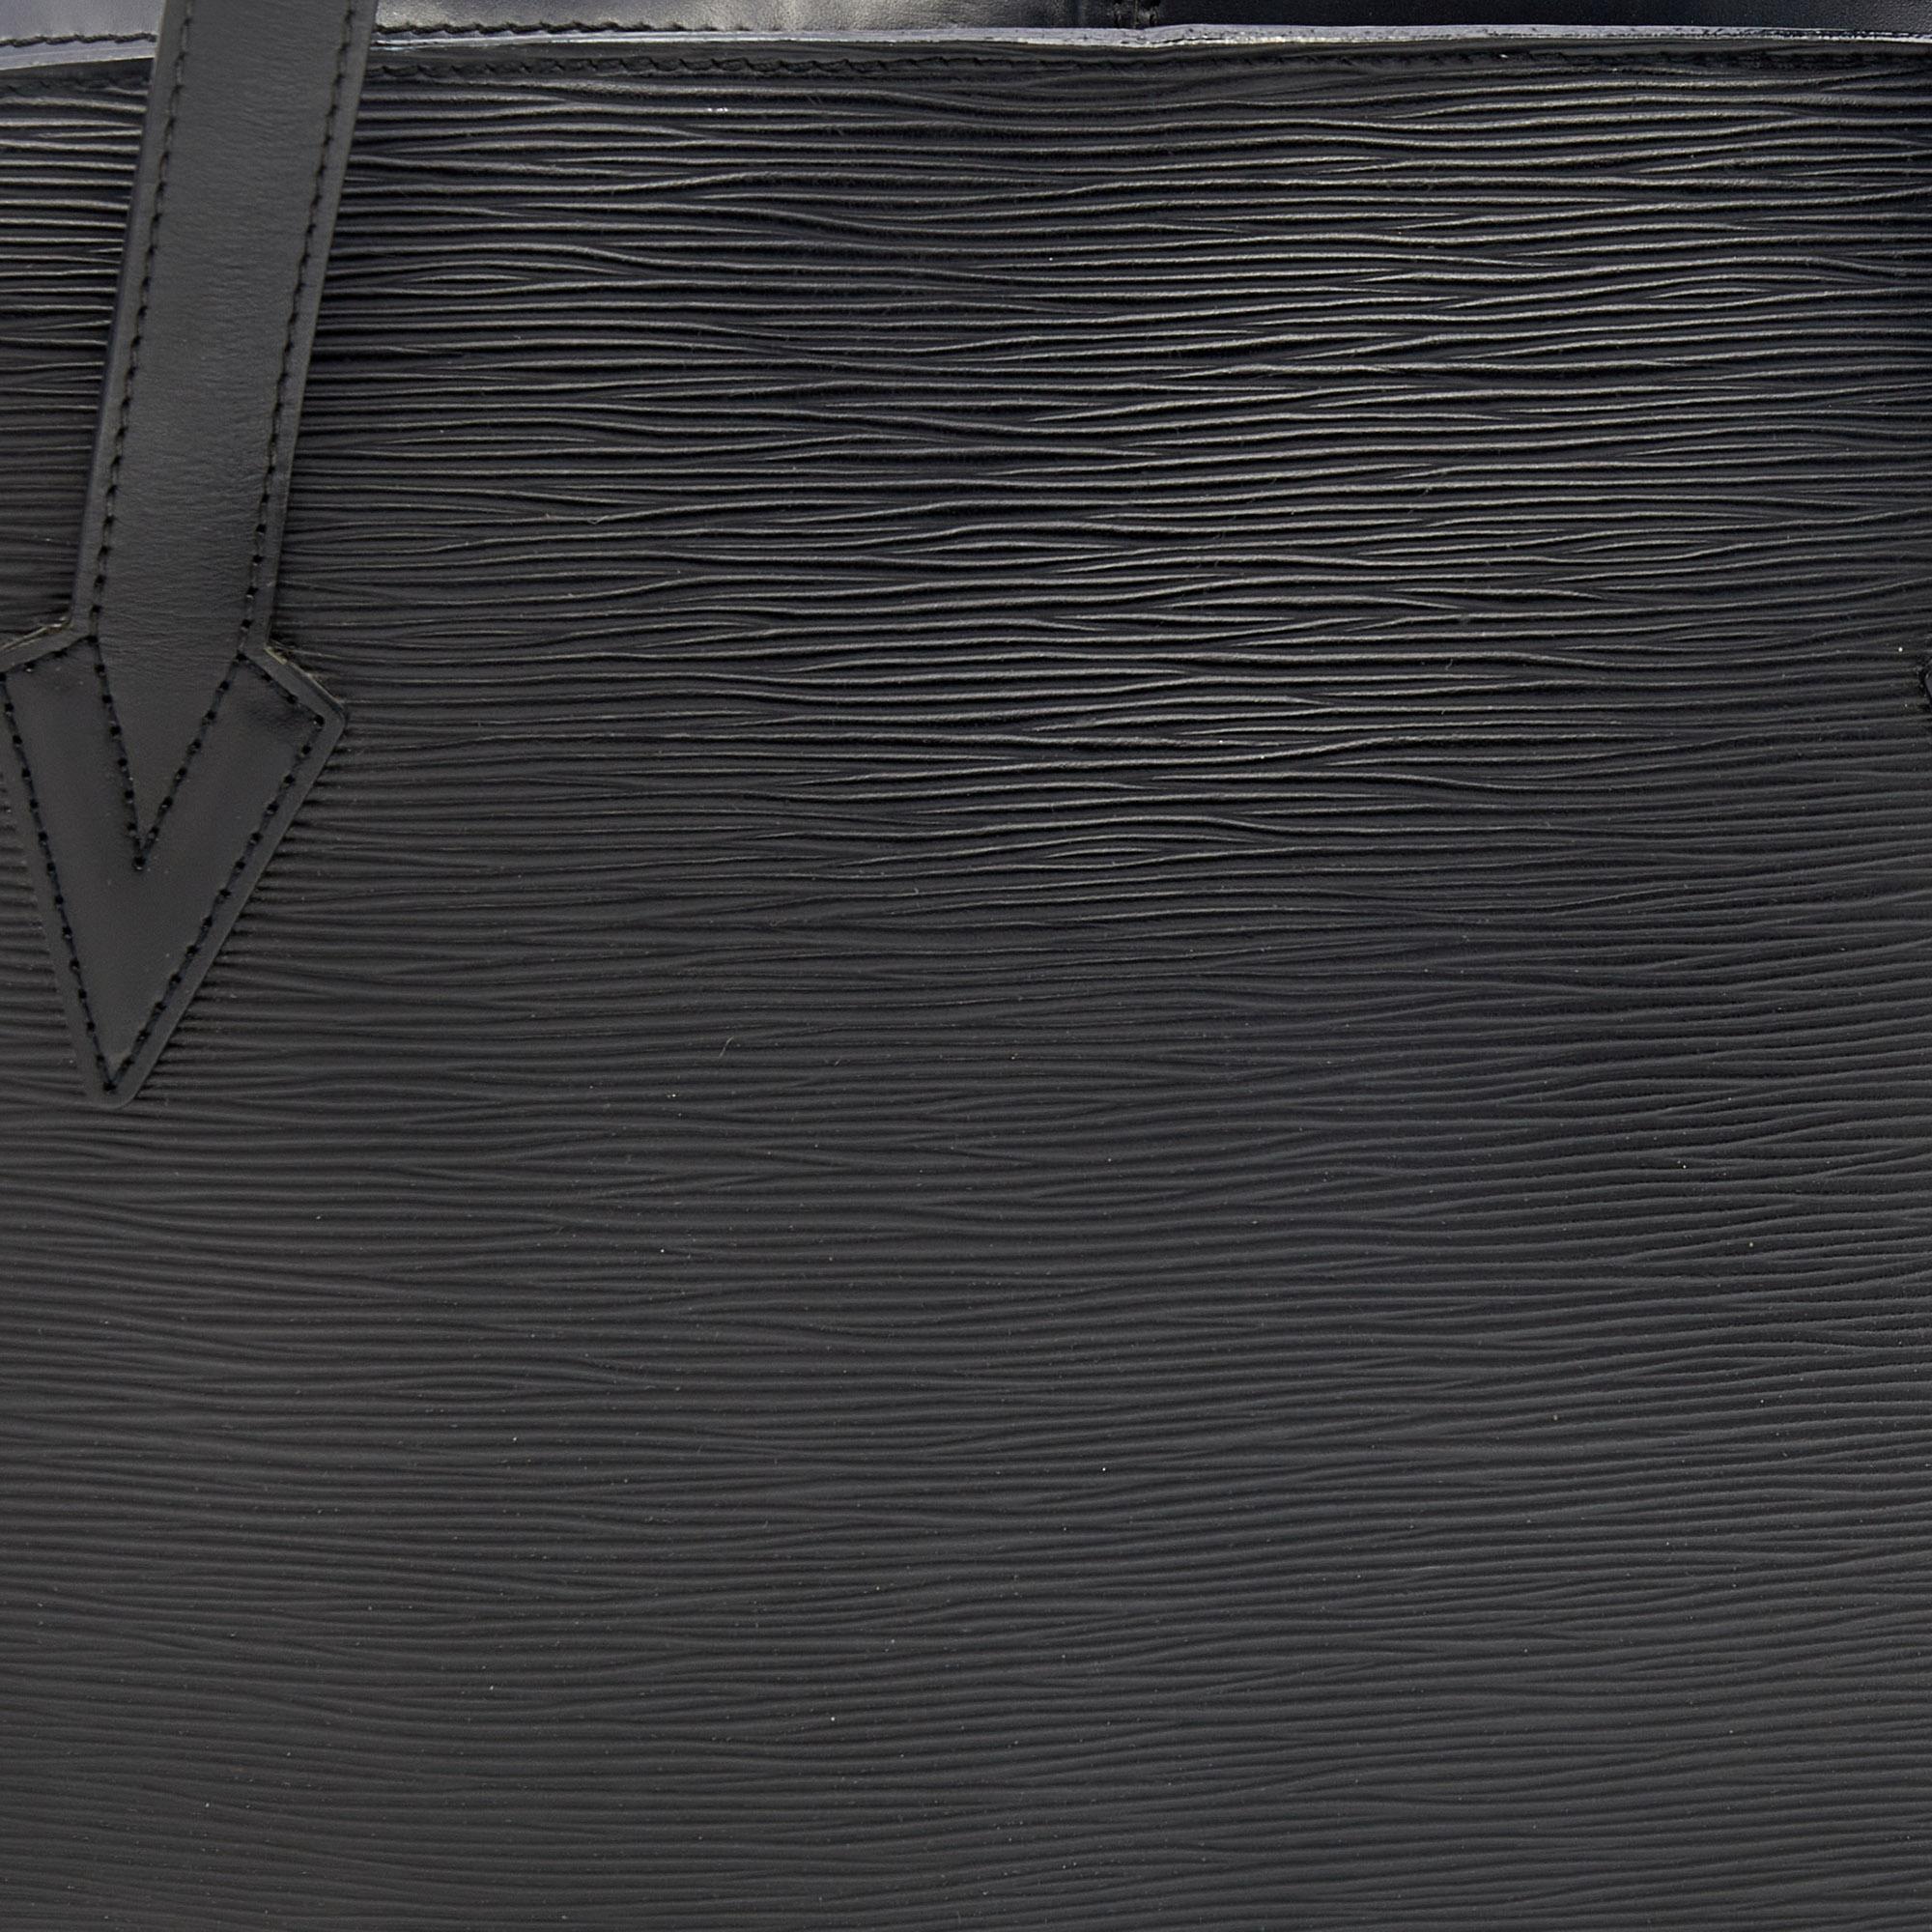 Louis Vuitton Black Epi Leather Lussac Bag 7